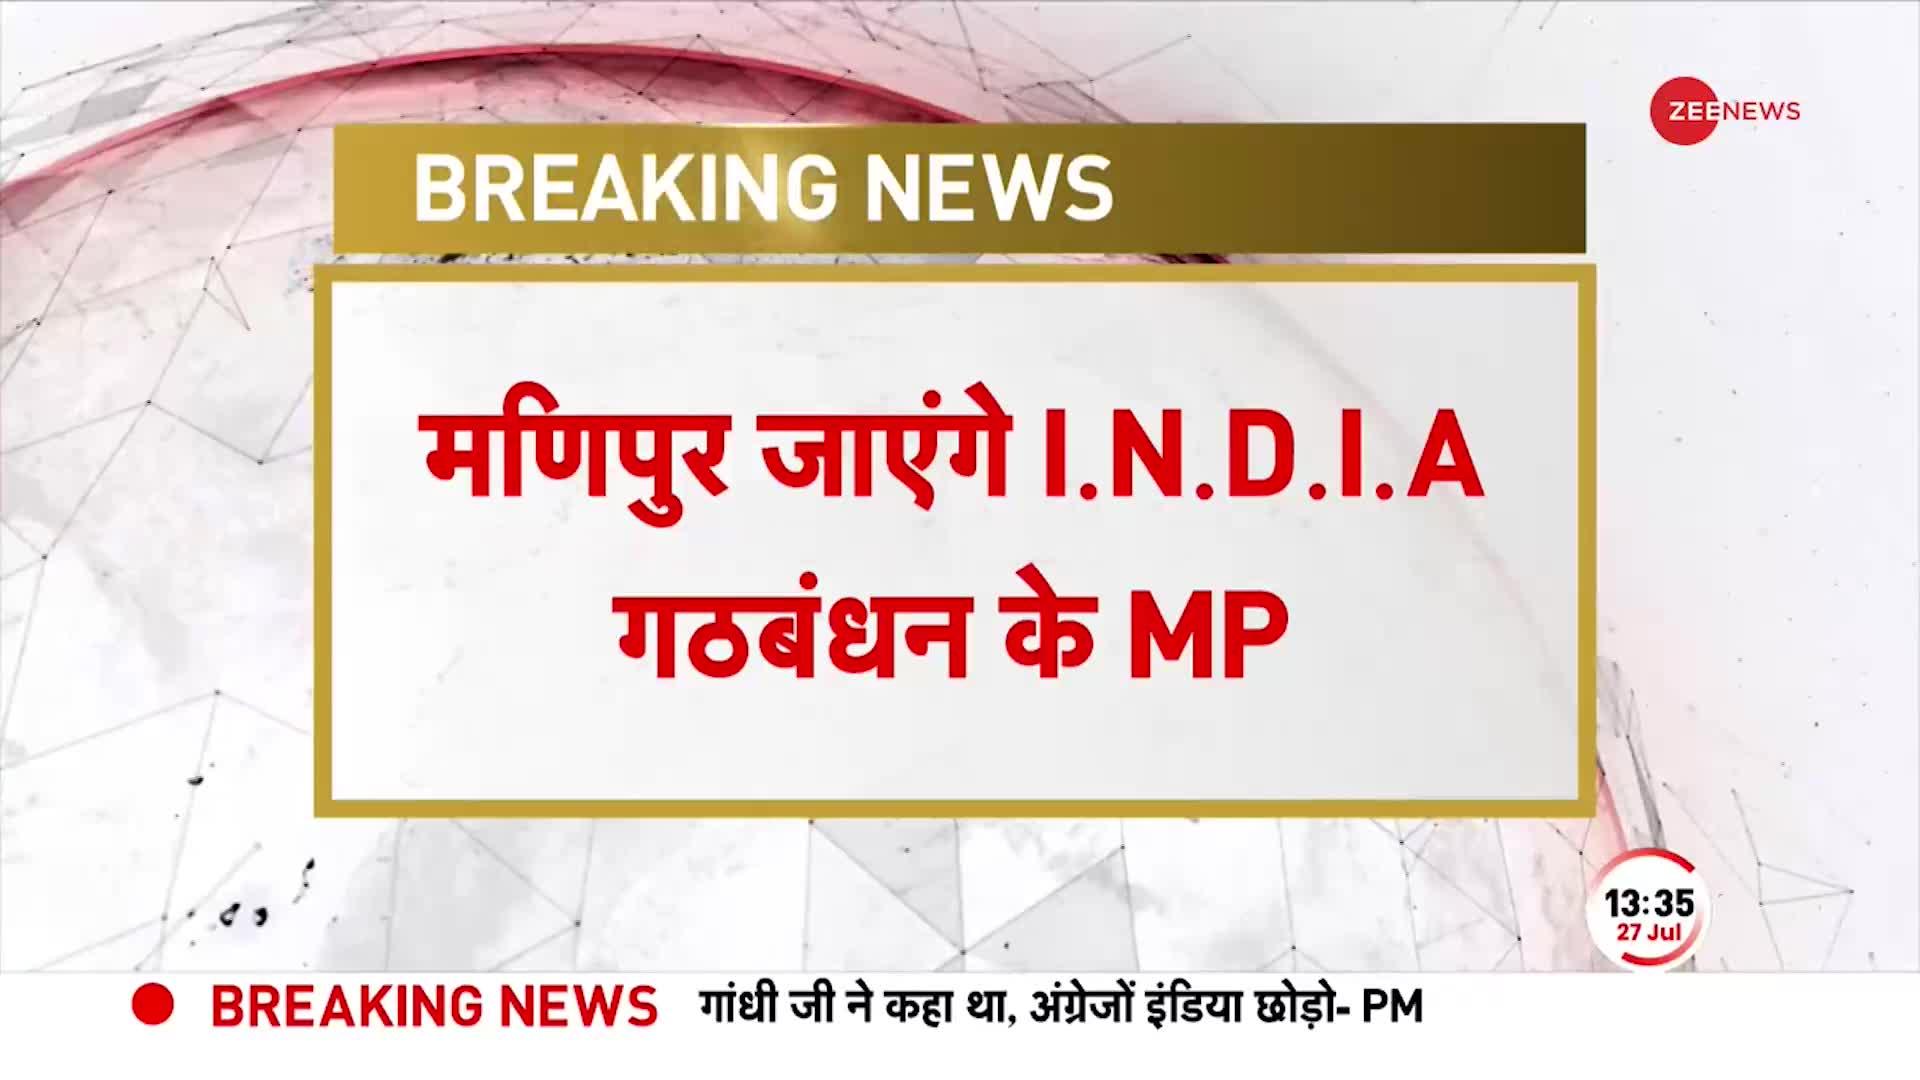 Breaking News: मणिपुर के मुद्दे पर संसद में हंगामा, विपक्षी गठबंधन 'INDIA' के MP जाएंगे मणिपुर